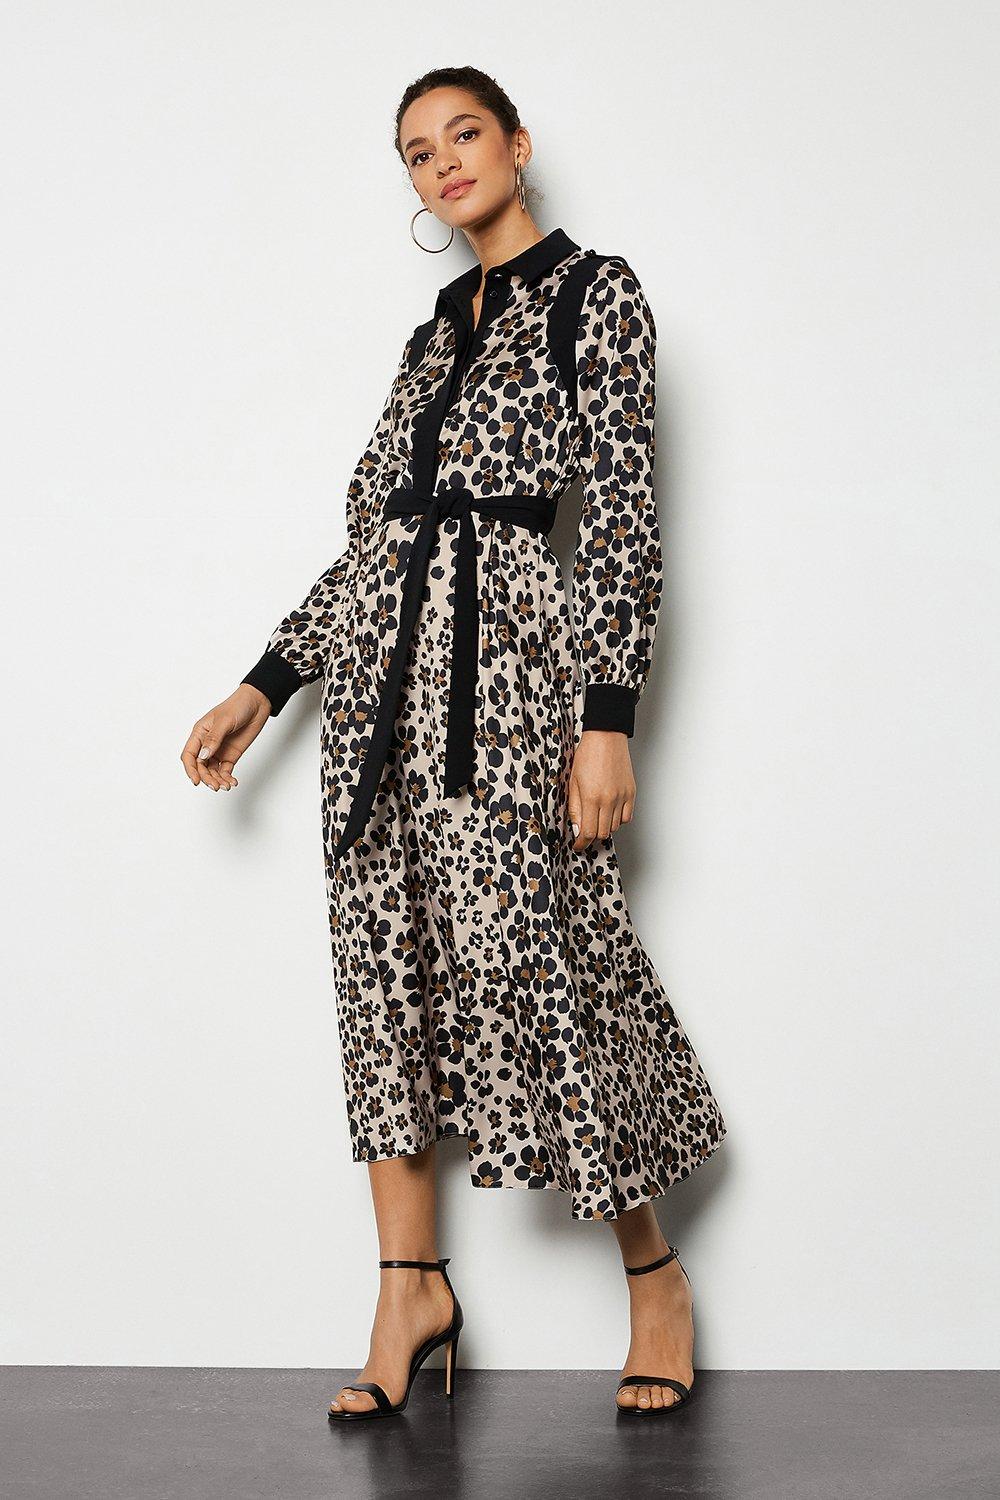 next leopard print shirt dress